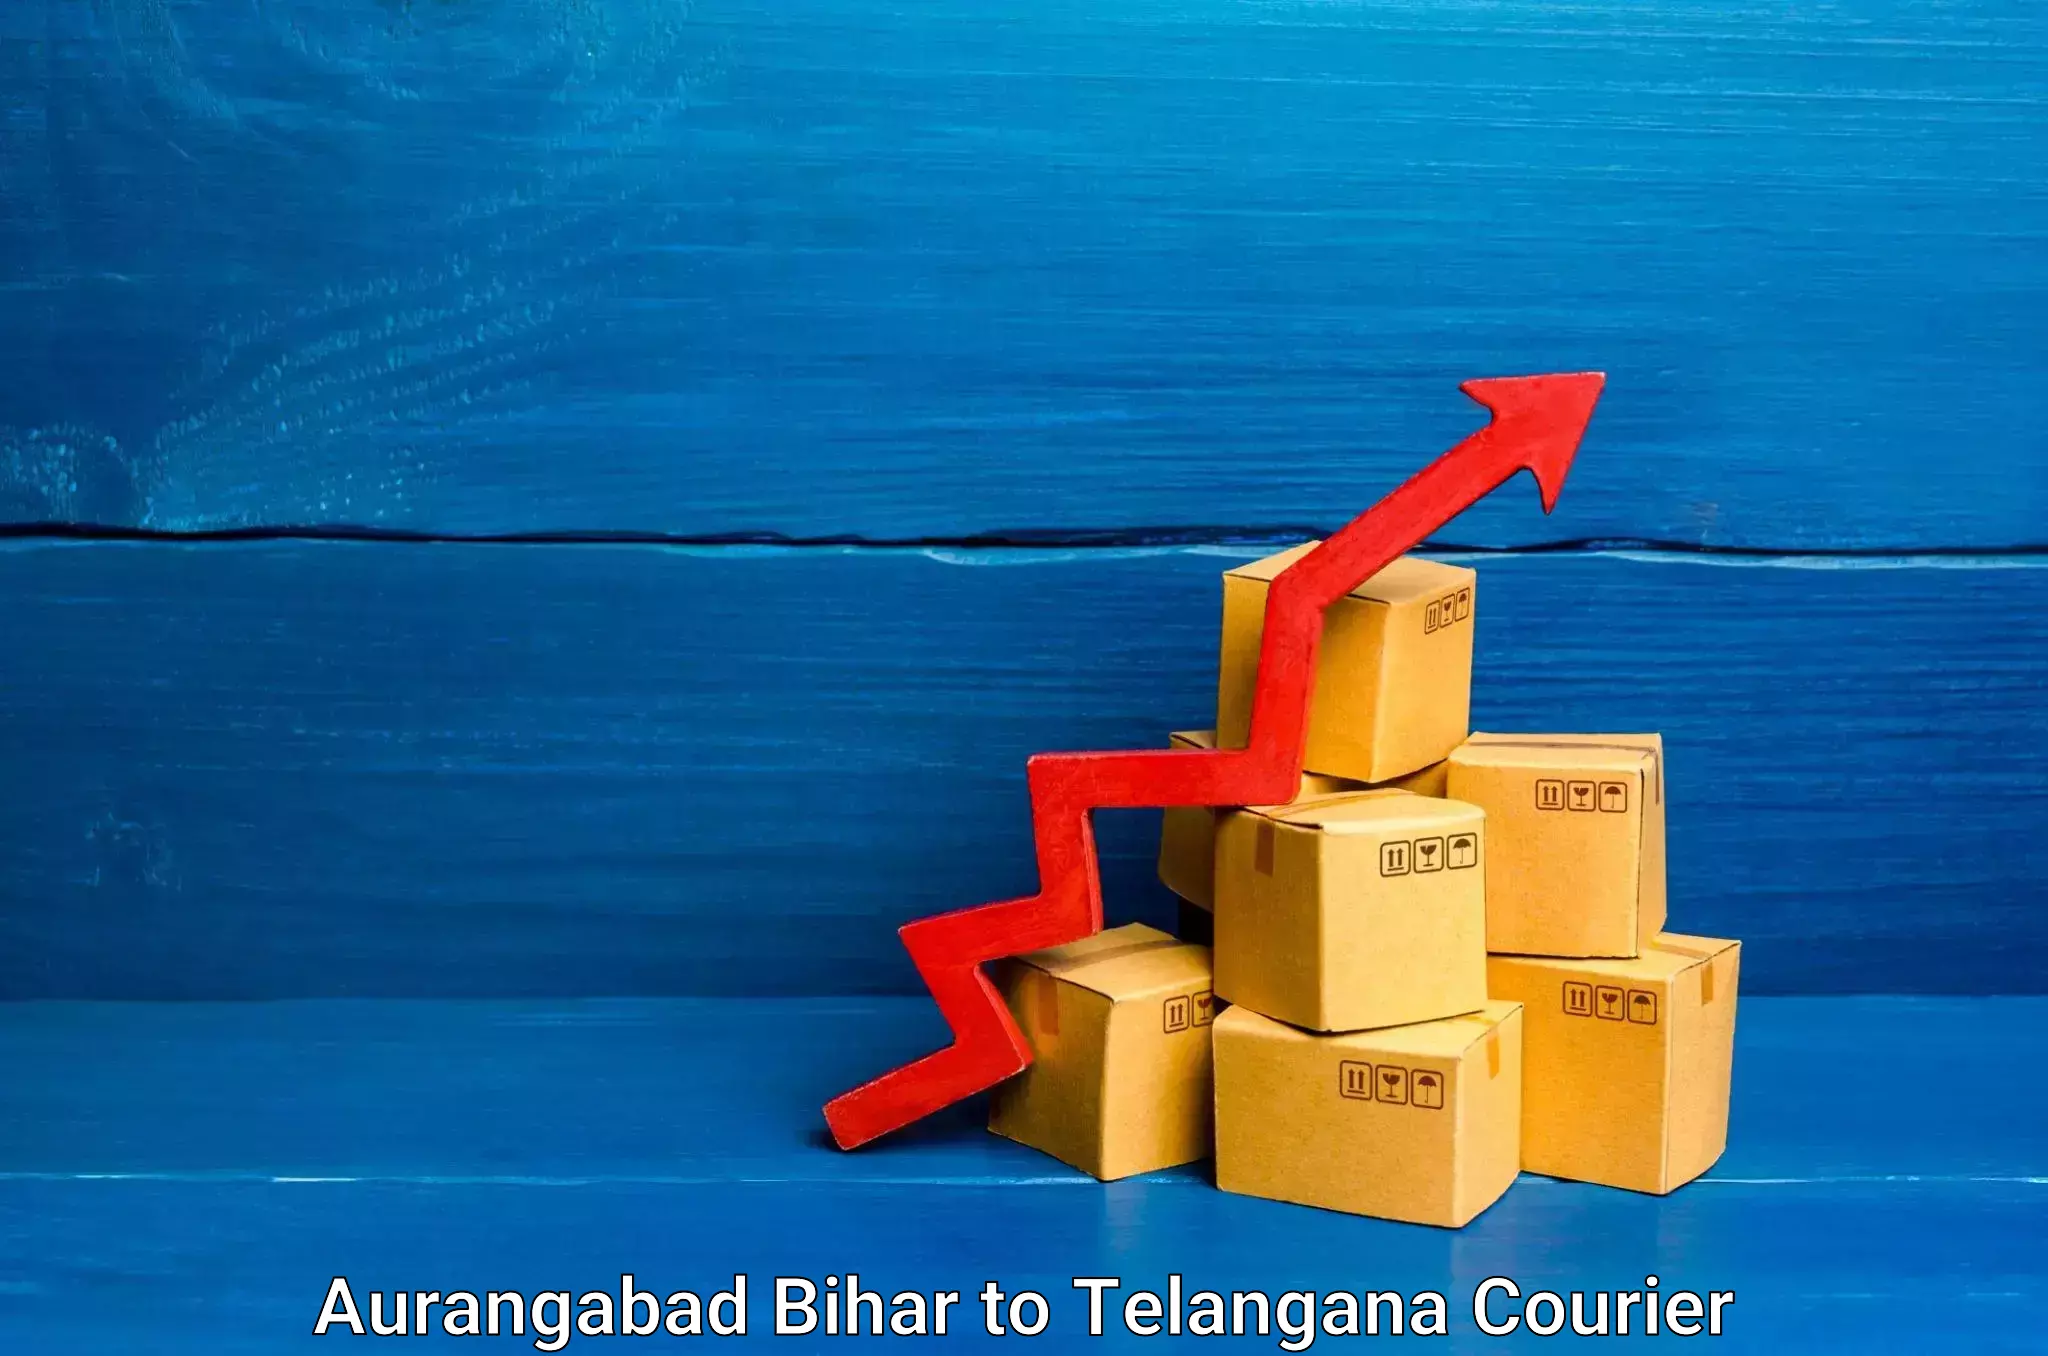 Customized moving experience Aurangabad Bihar to Secunderabad